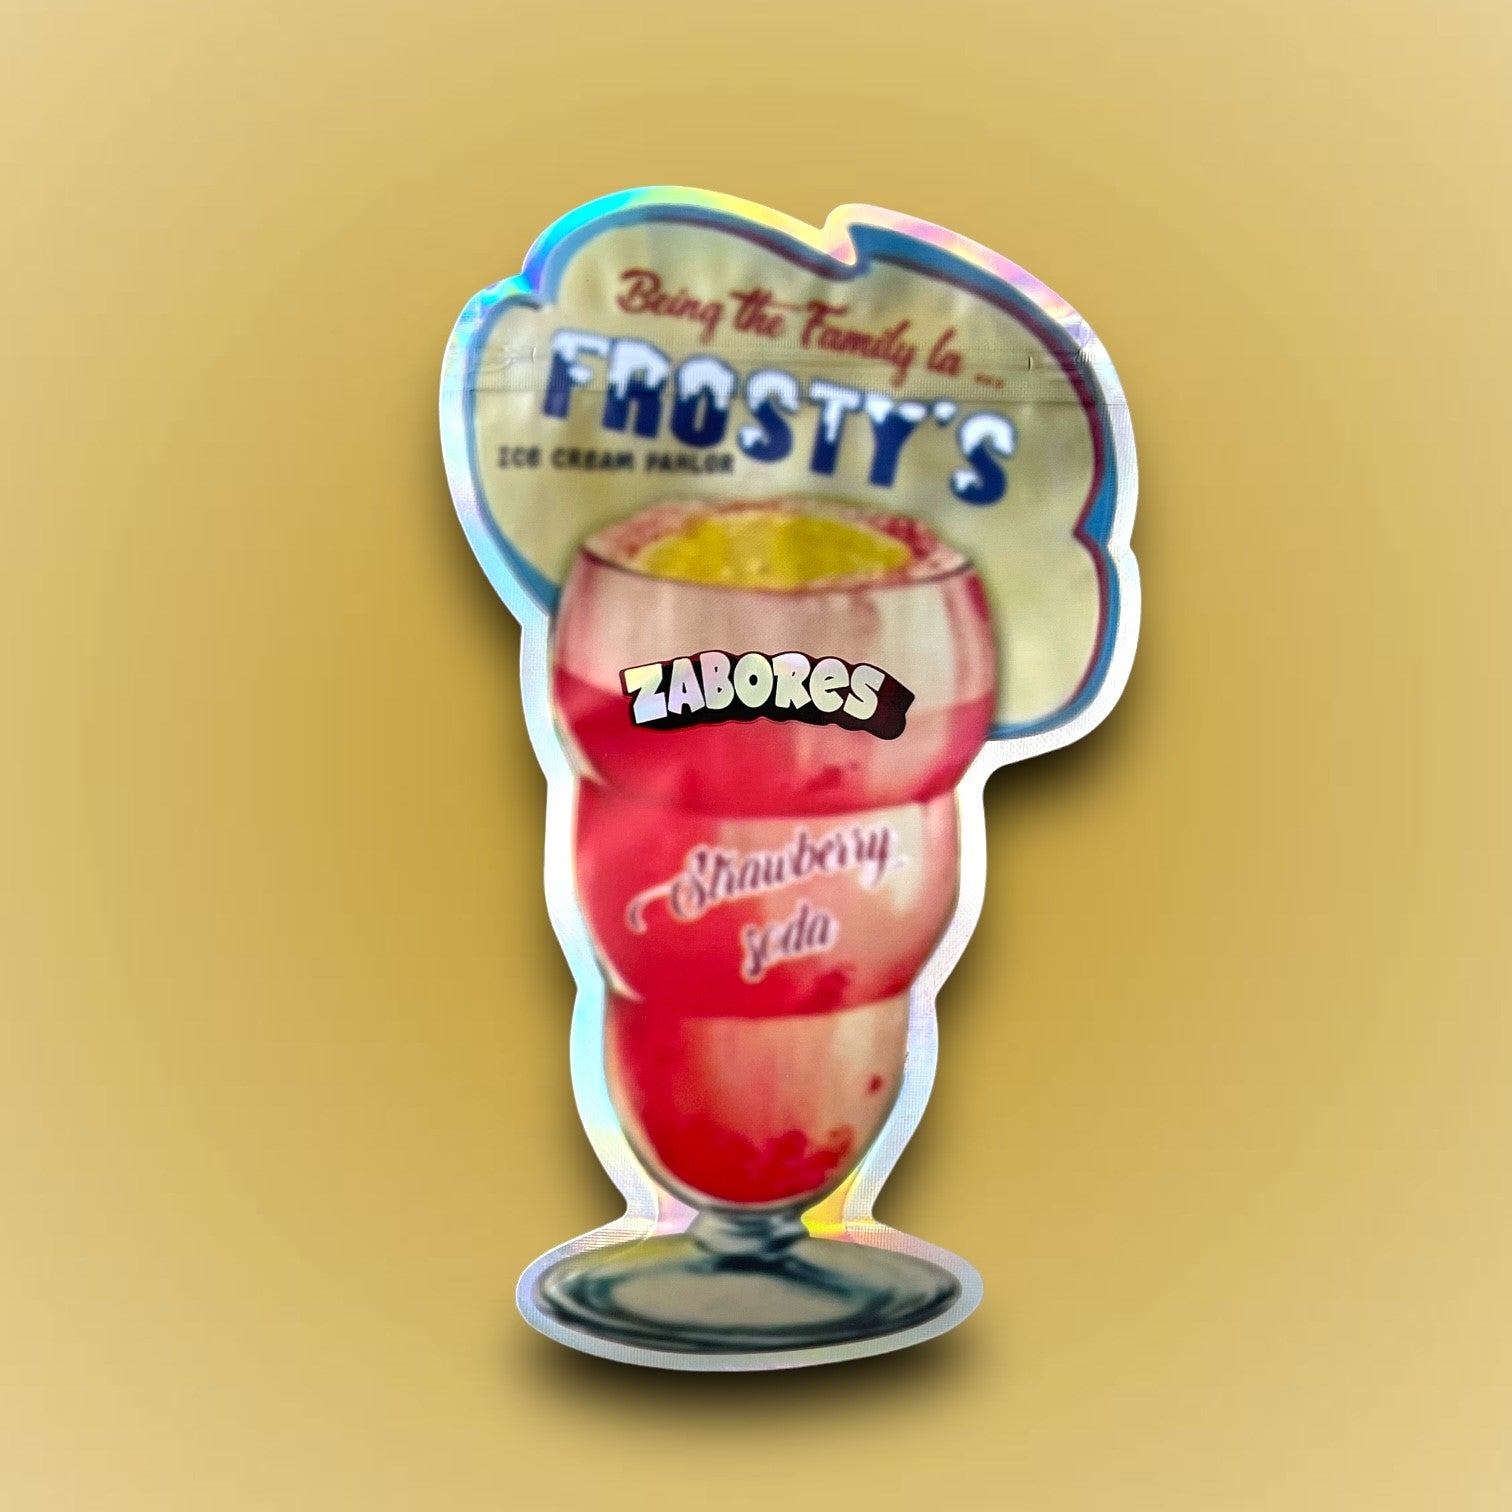 Frosty's Zabores Strawberry Soda 3.5g Mylar Bag Ice Cream Pahlor